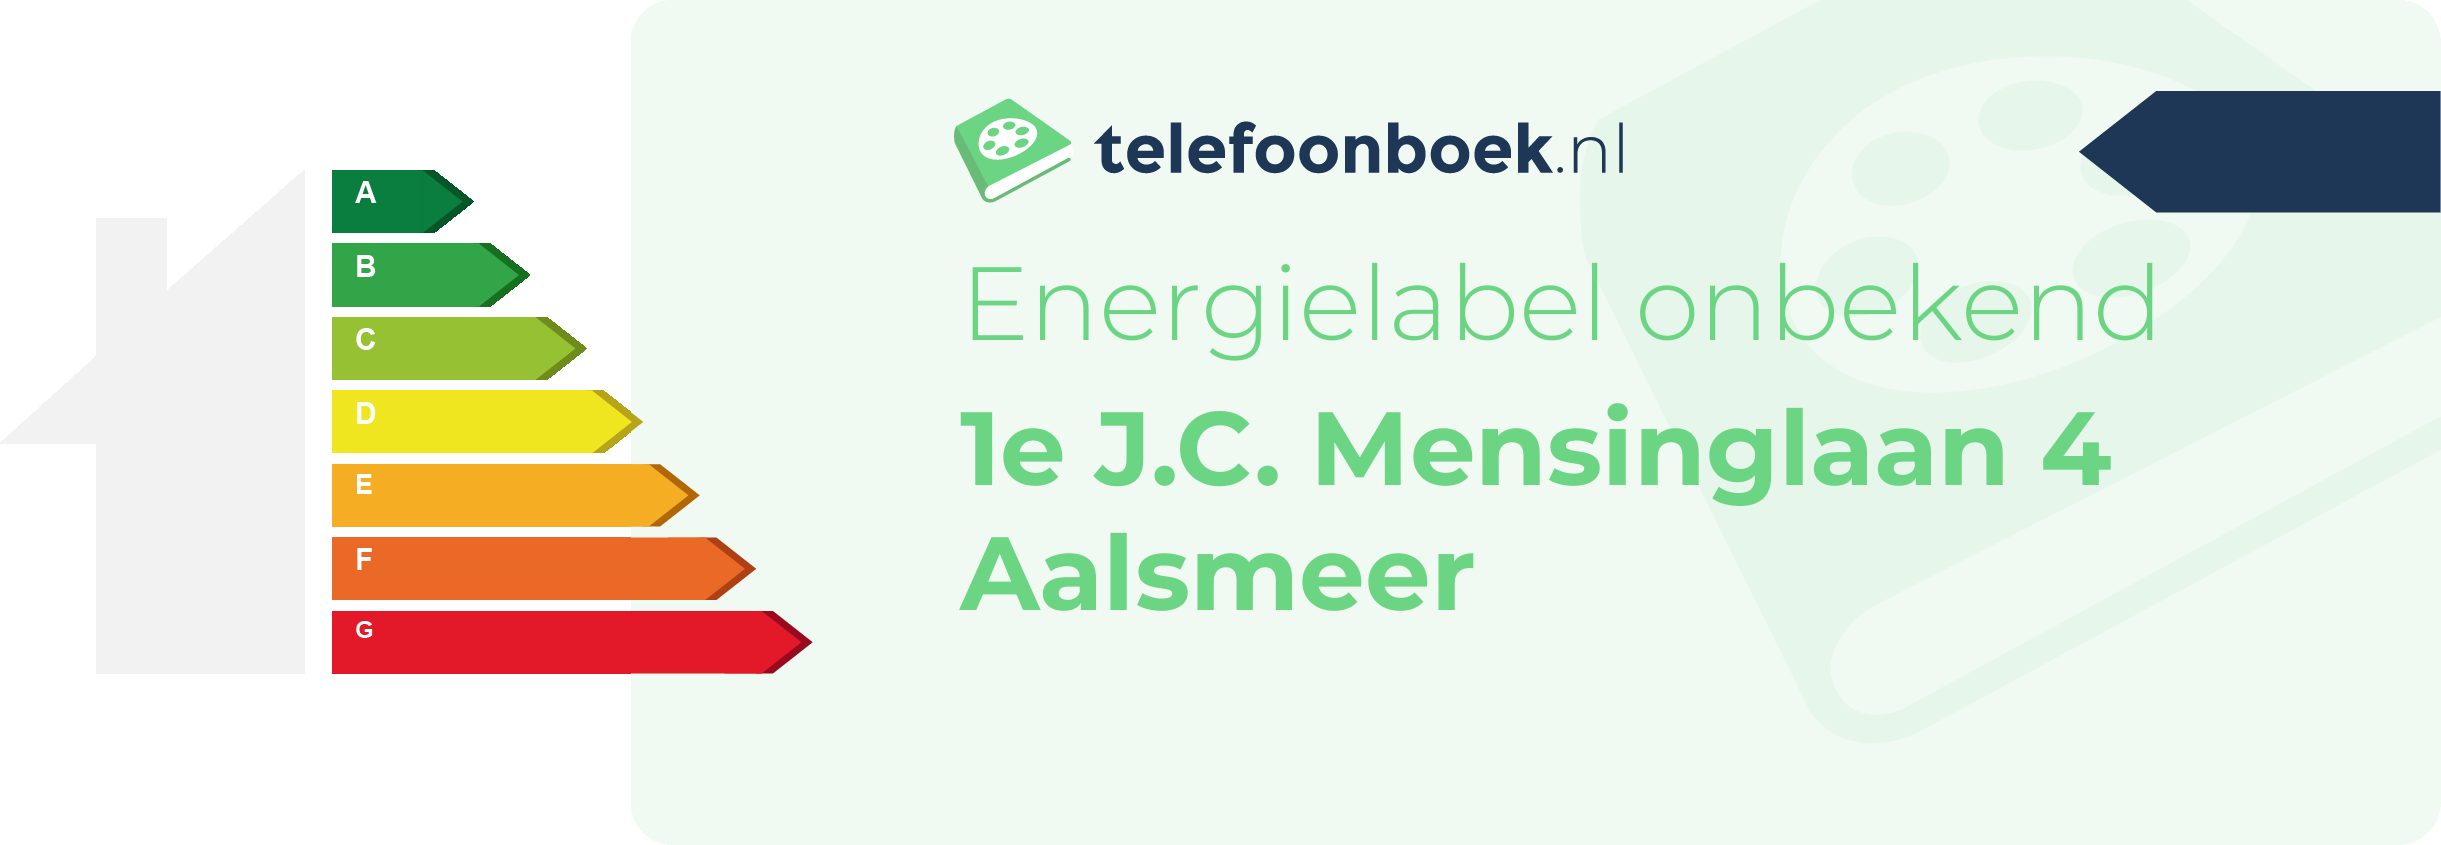 Energielabel 1e J.C. Mensinglaan 4 Aalsmeer